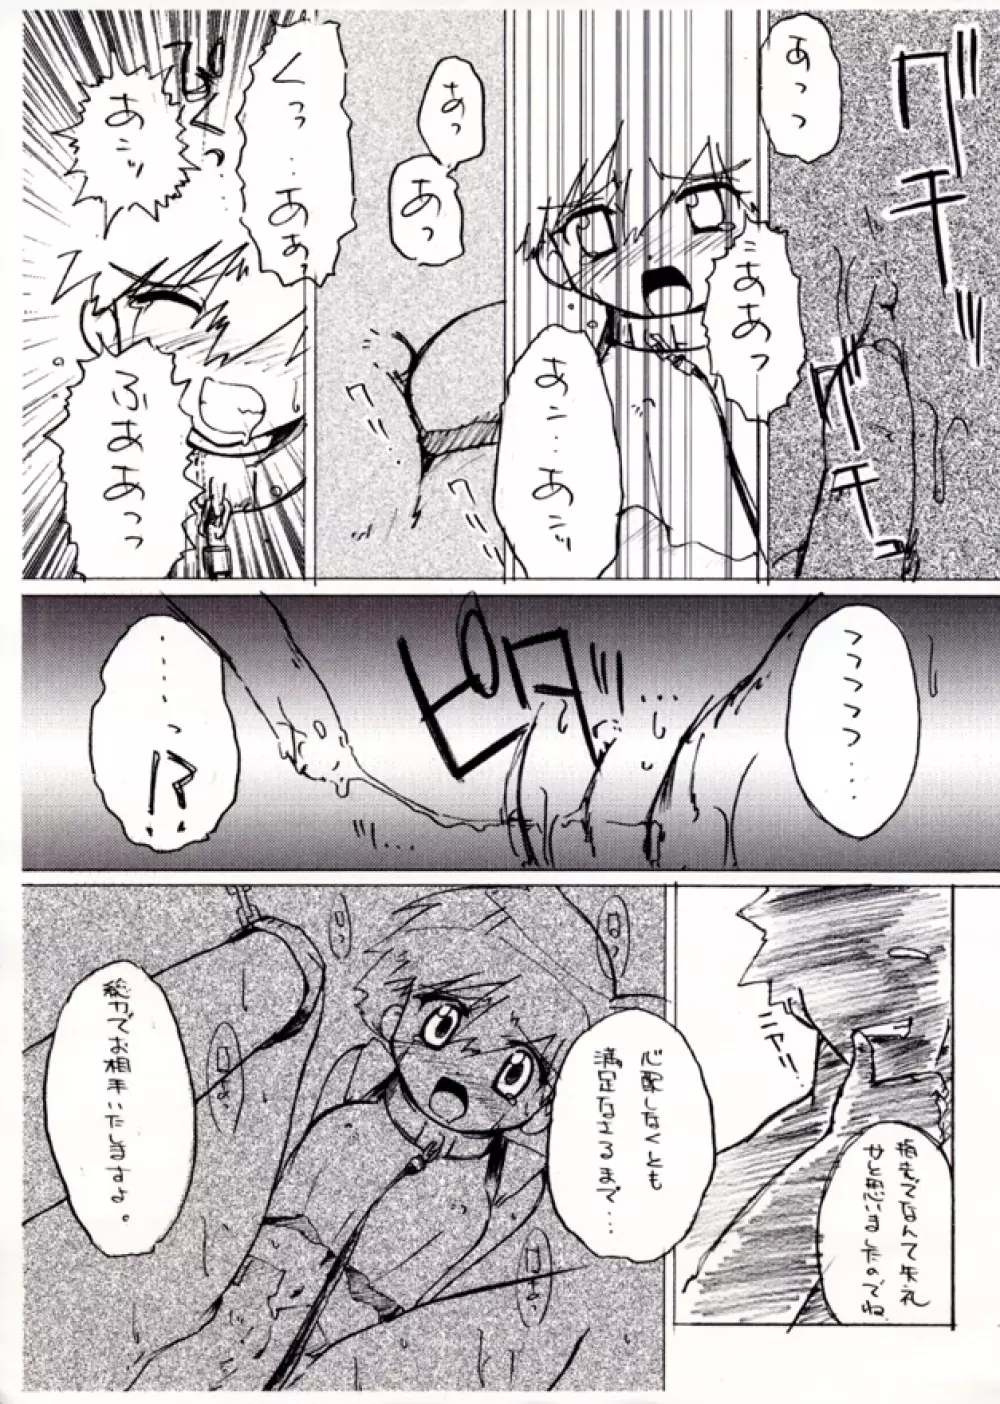 KASUMIX XPLOSION Kasumi Comic part5 17ページ